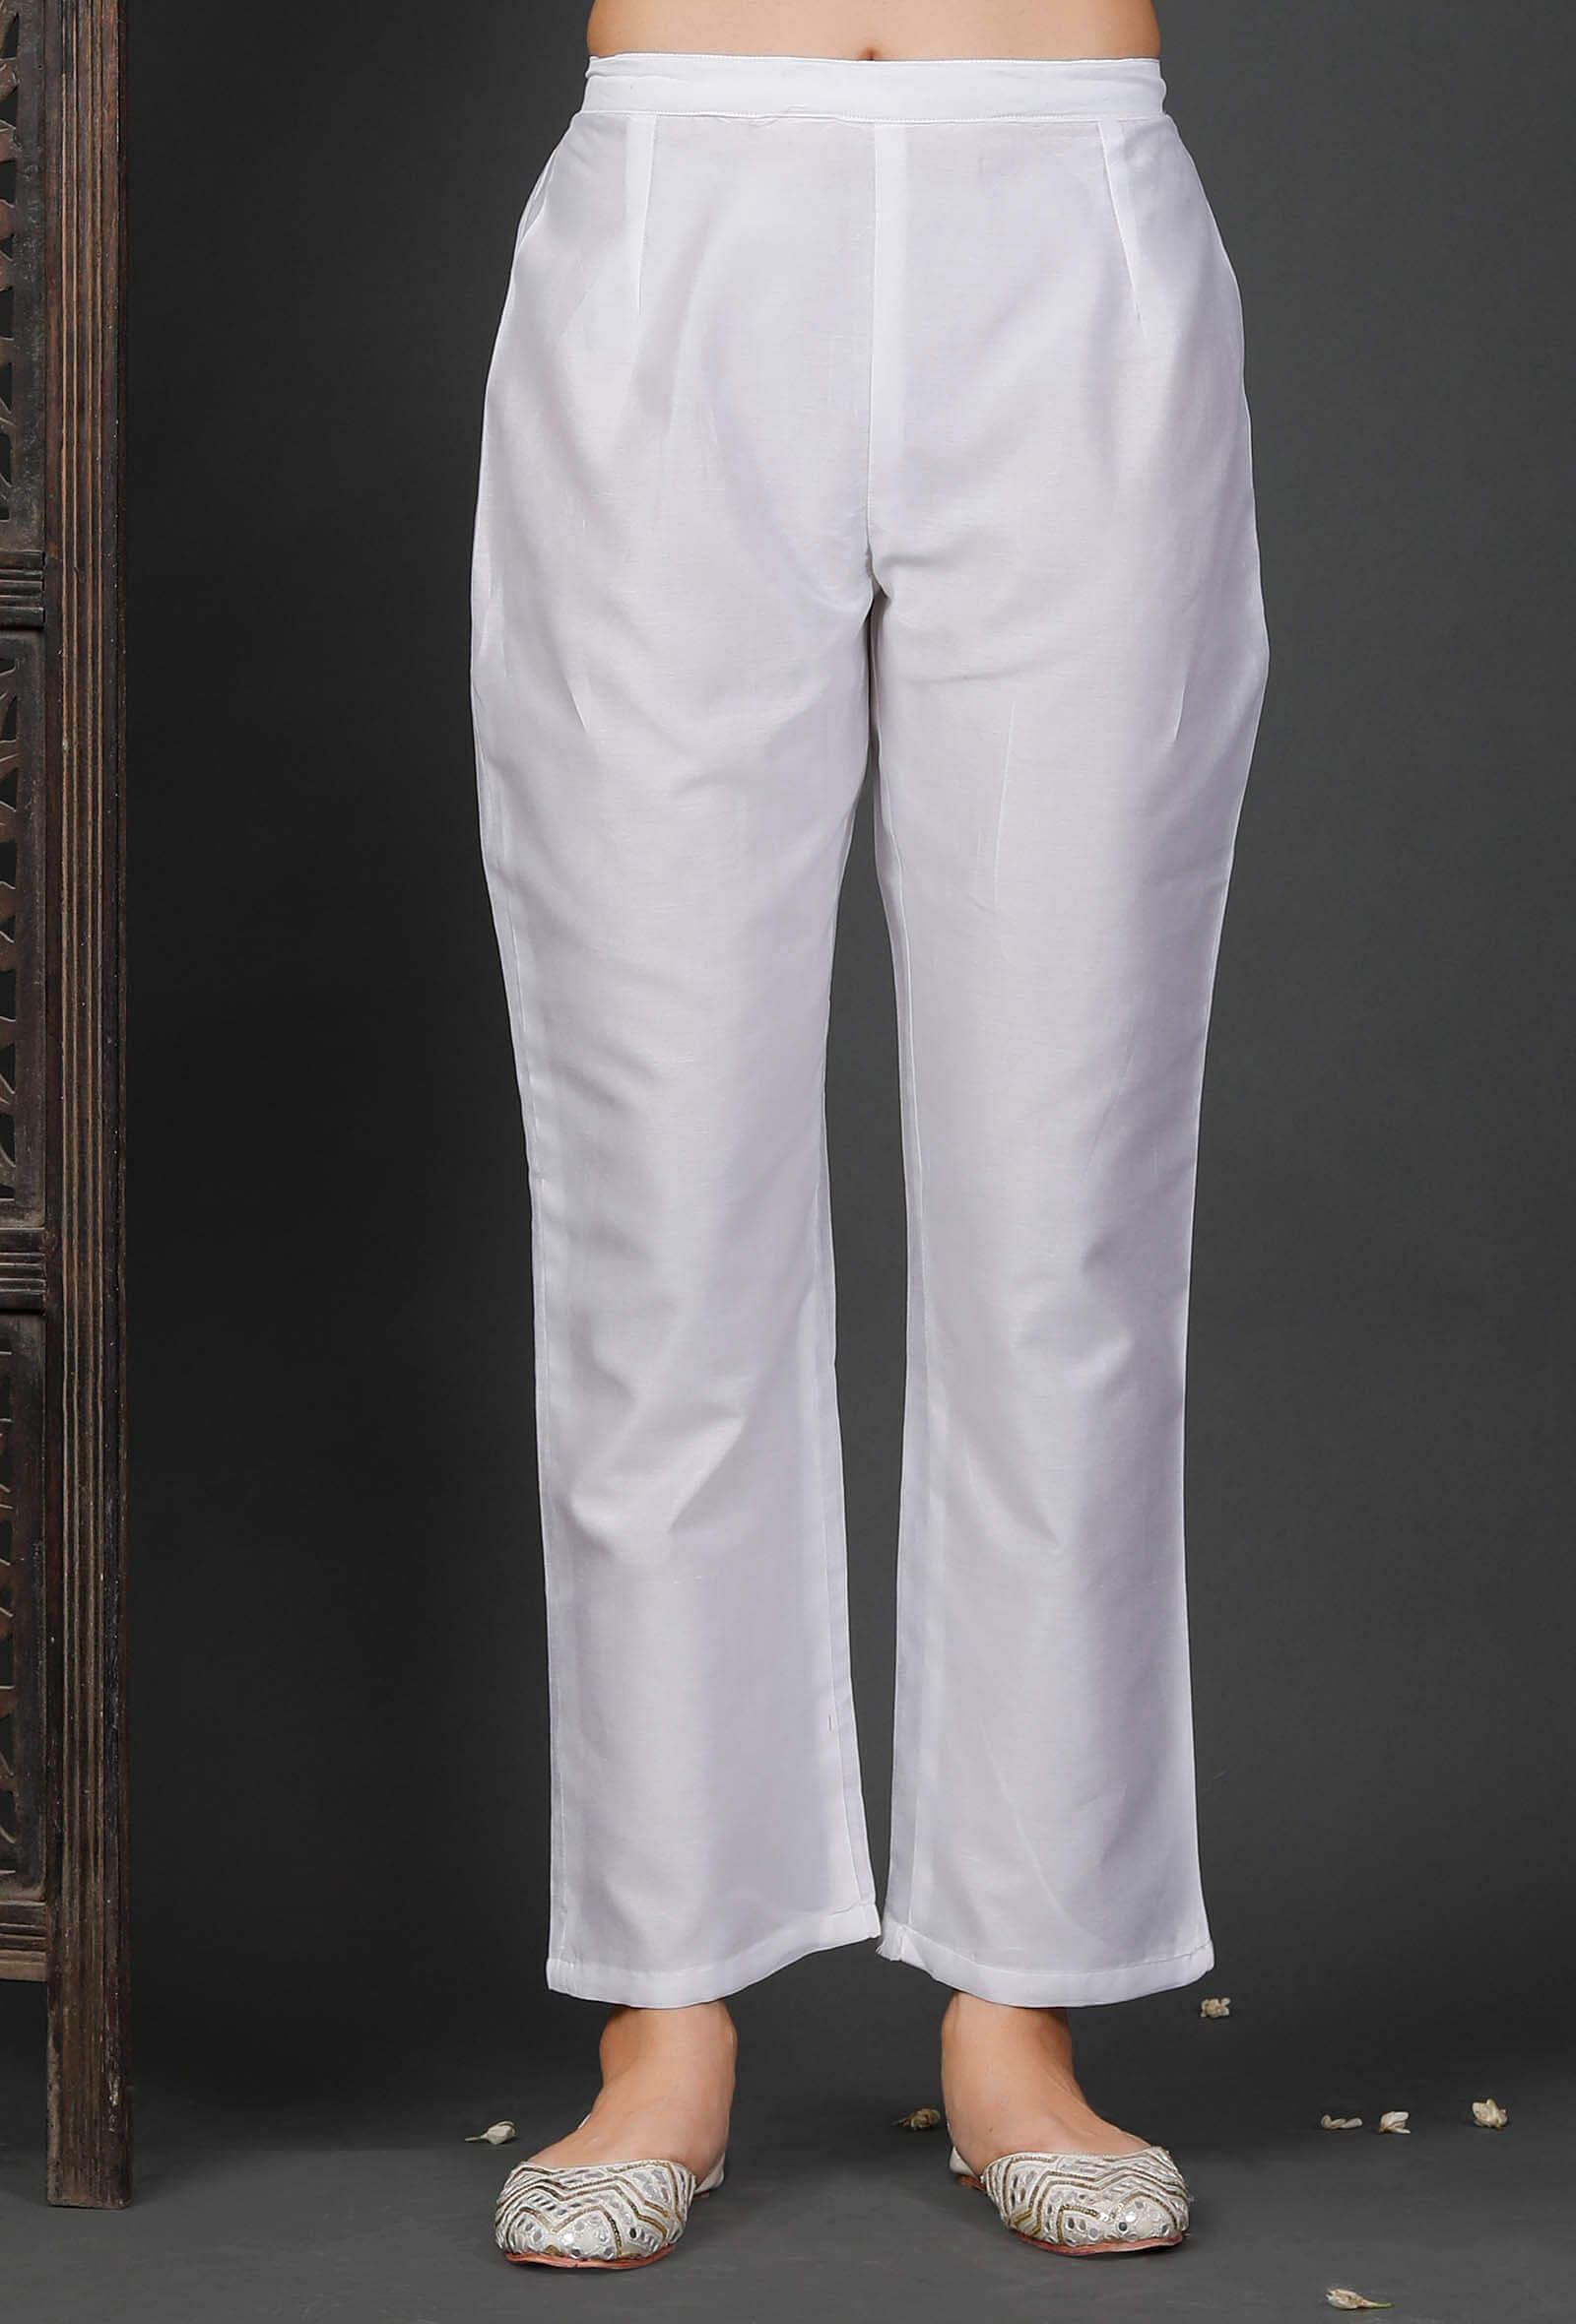 white-chanderi-pants